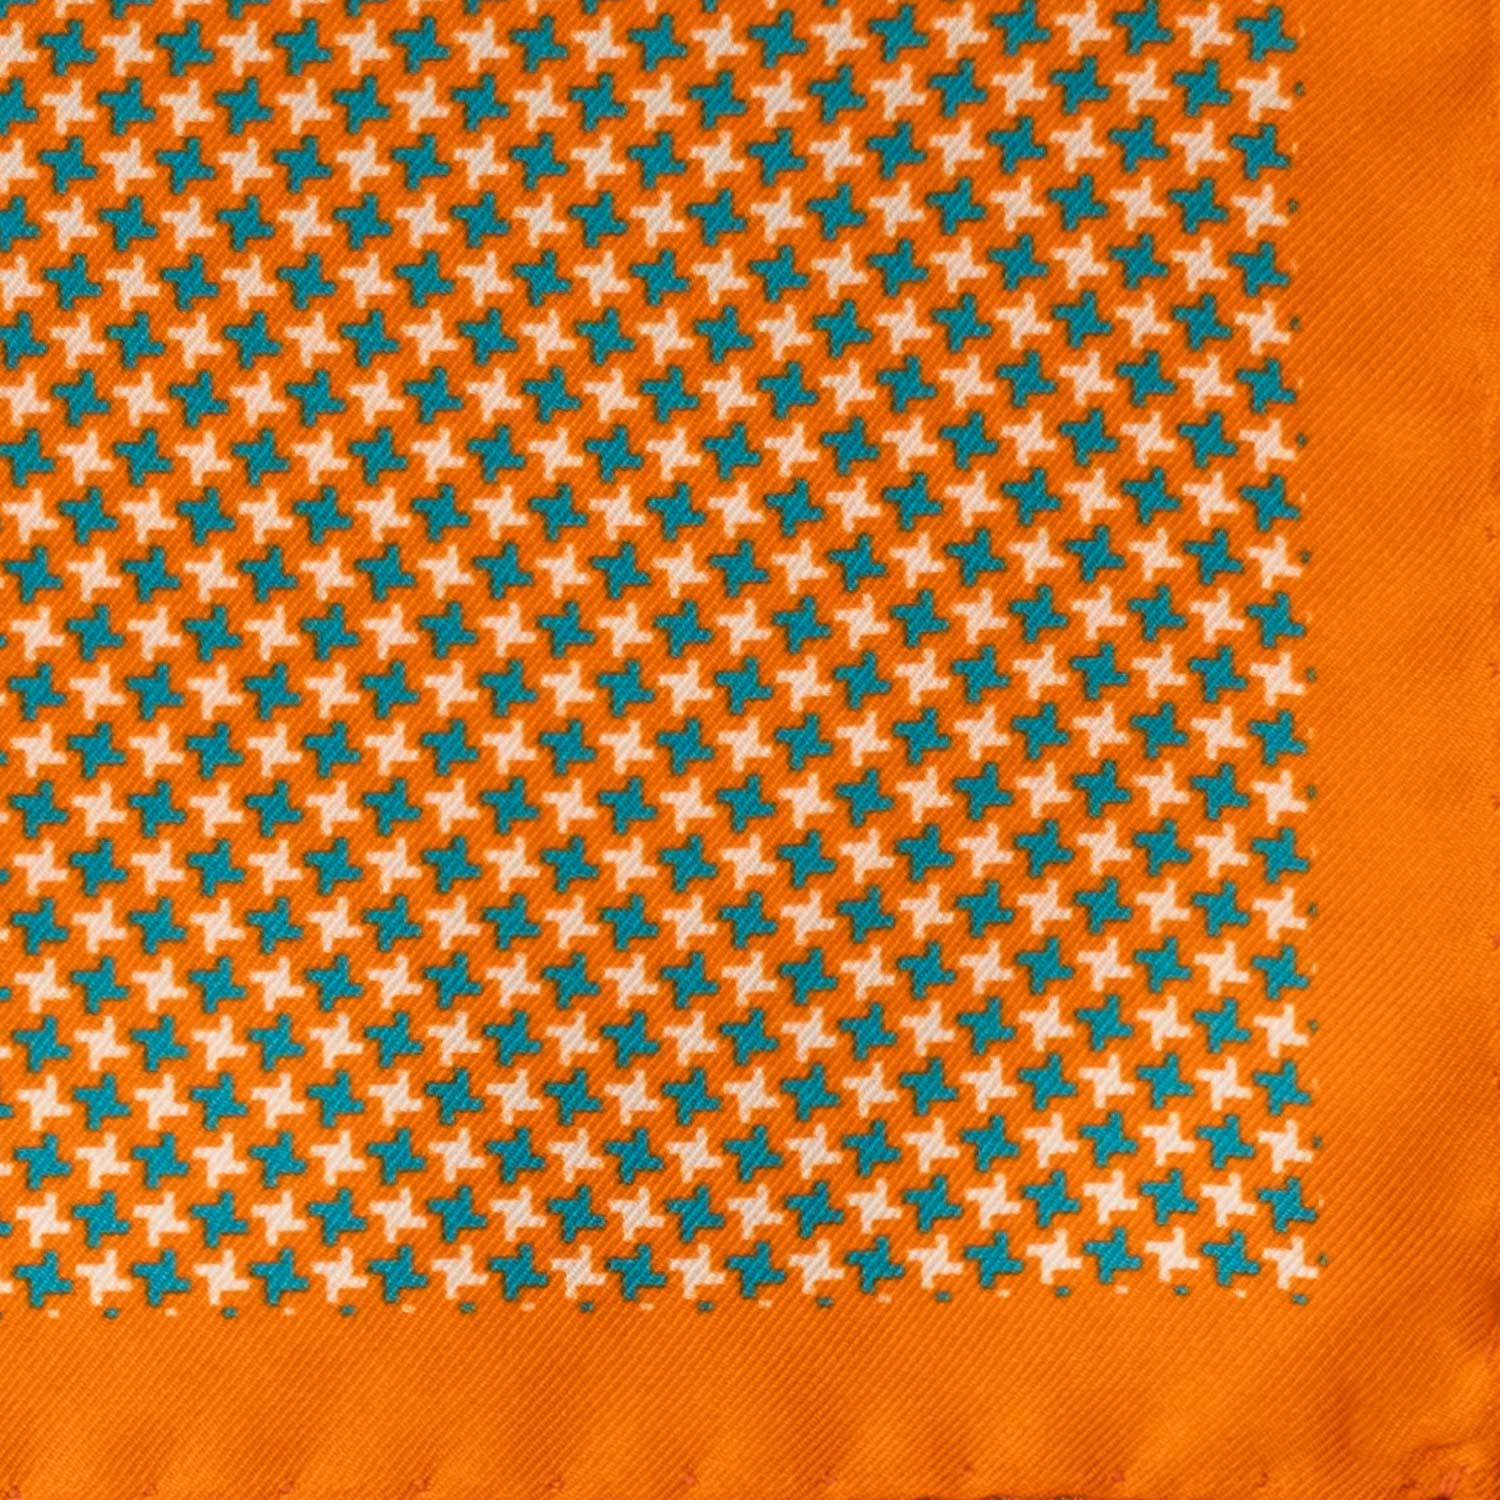 Fazzoletto da Taschino Vintage di Seta Arancione Pied de Poule Tiffany Grigio Chiaro POCV779 Dettaglio